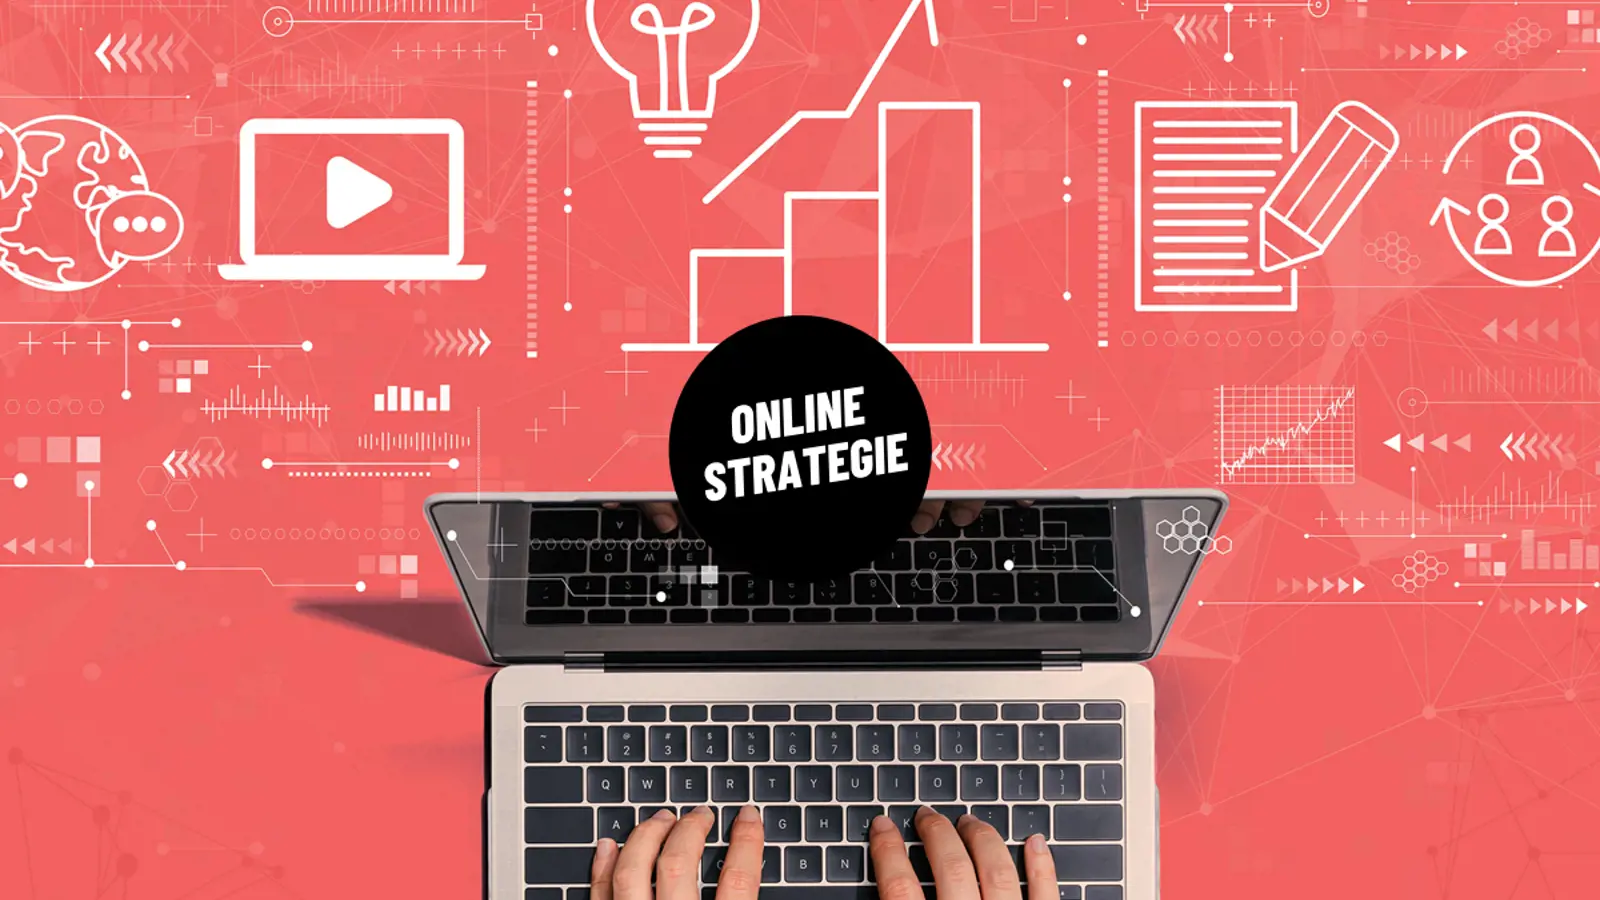 afbeelding online strategie met handen op laptop, web icoontjes & vrolijk online